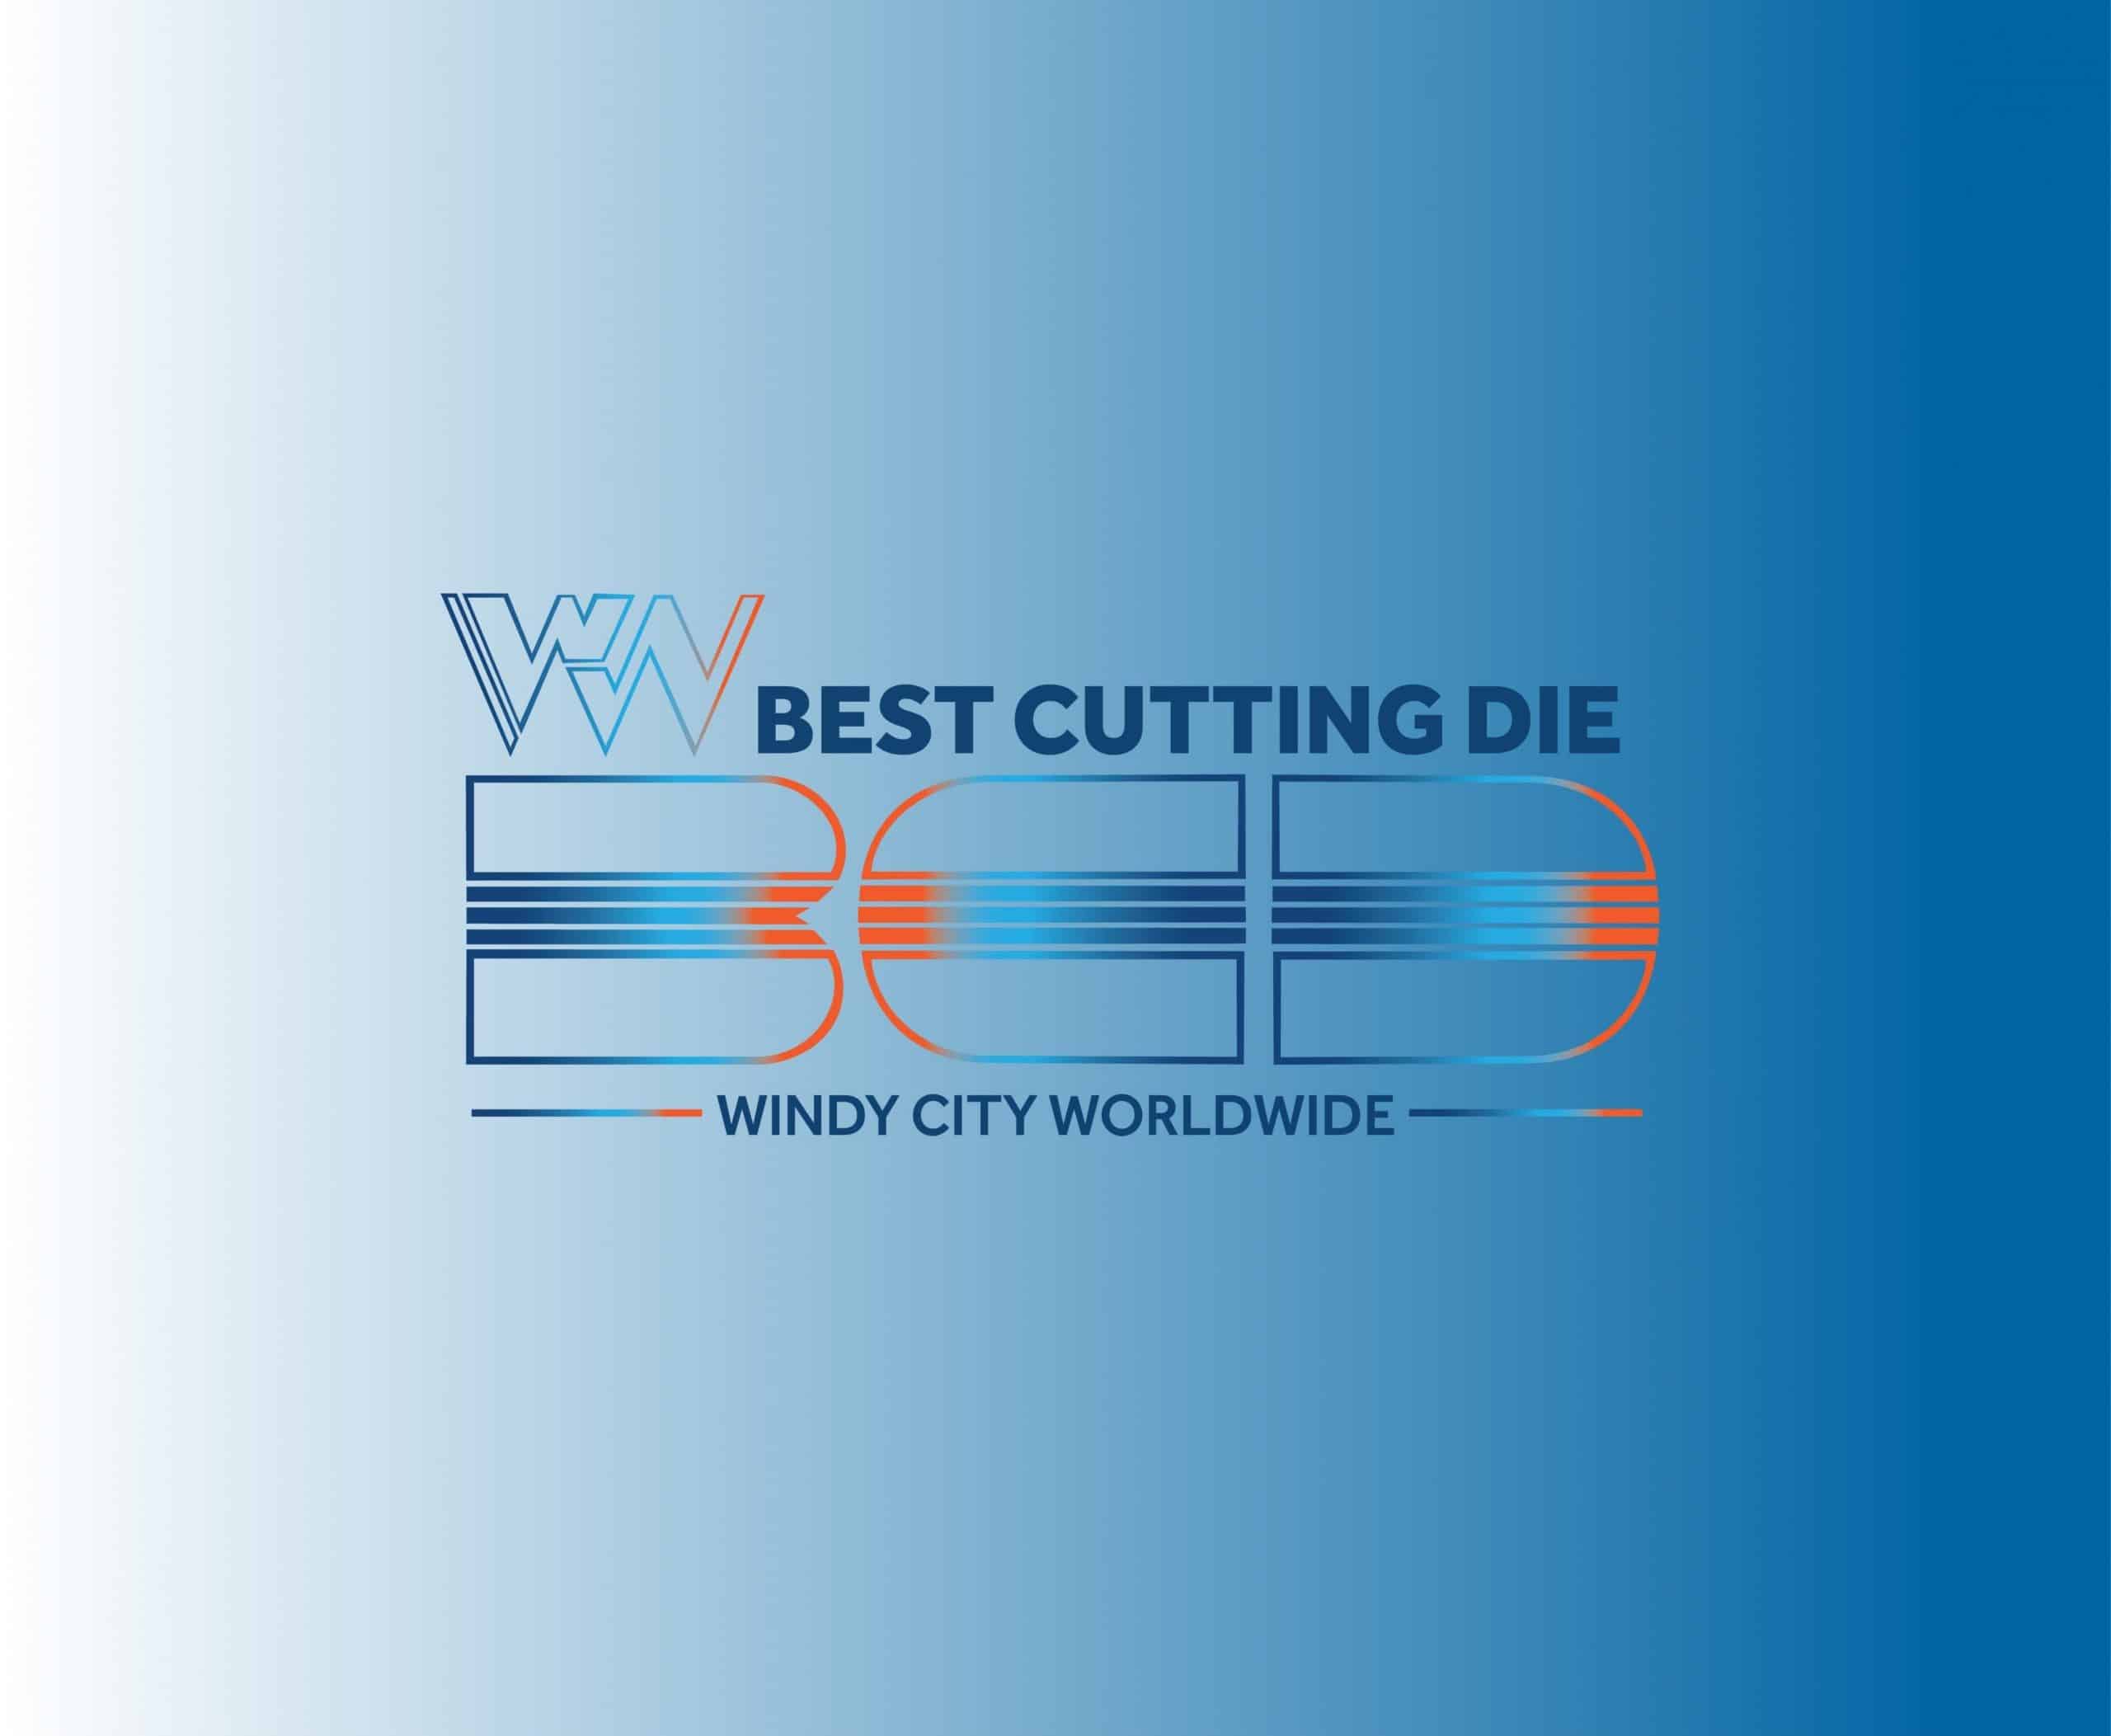 Best Cutting Die - Windy City Worldwide